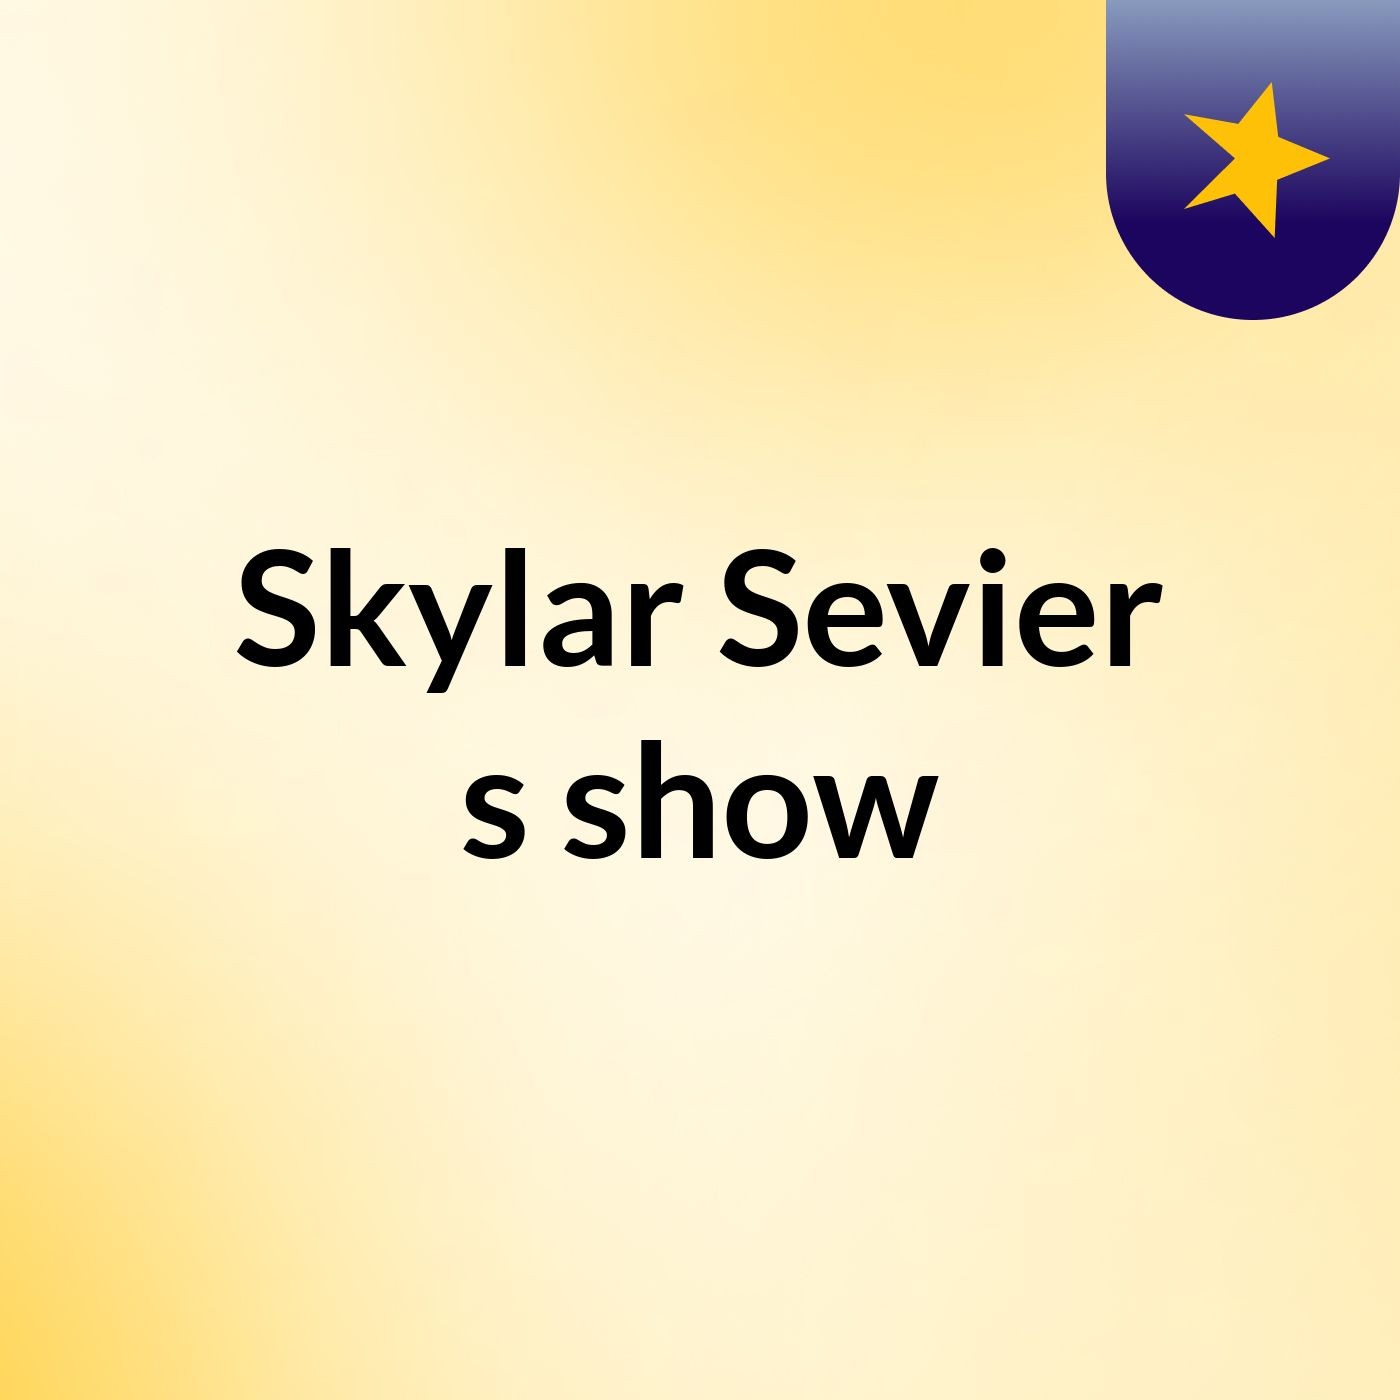 Skylar Sevier's show